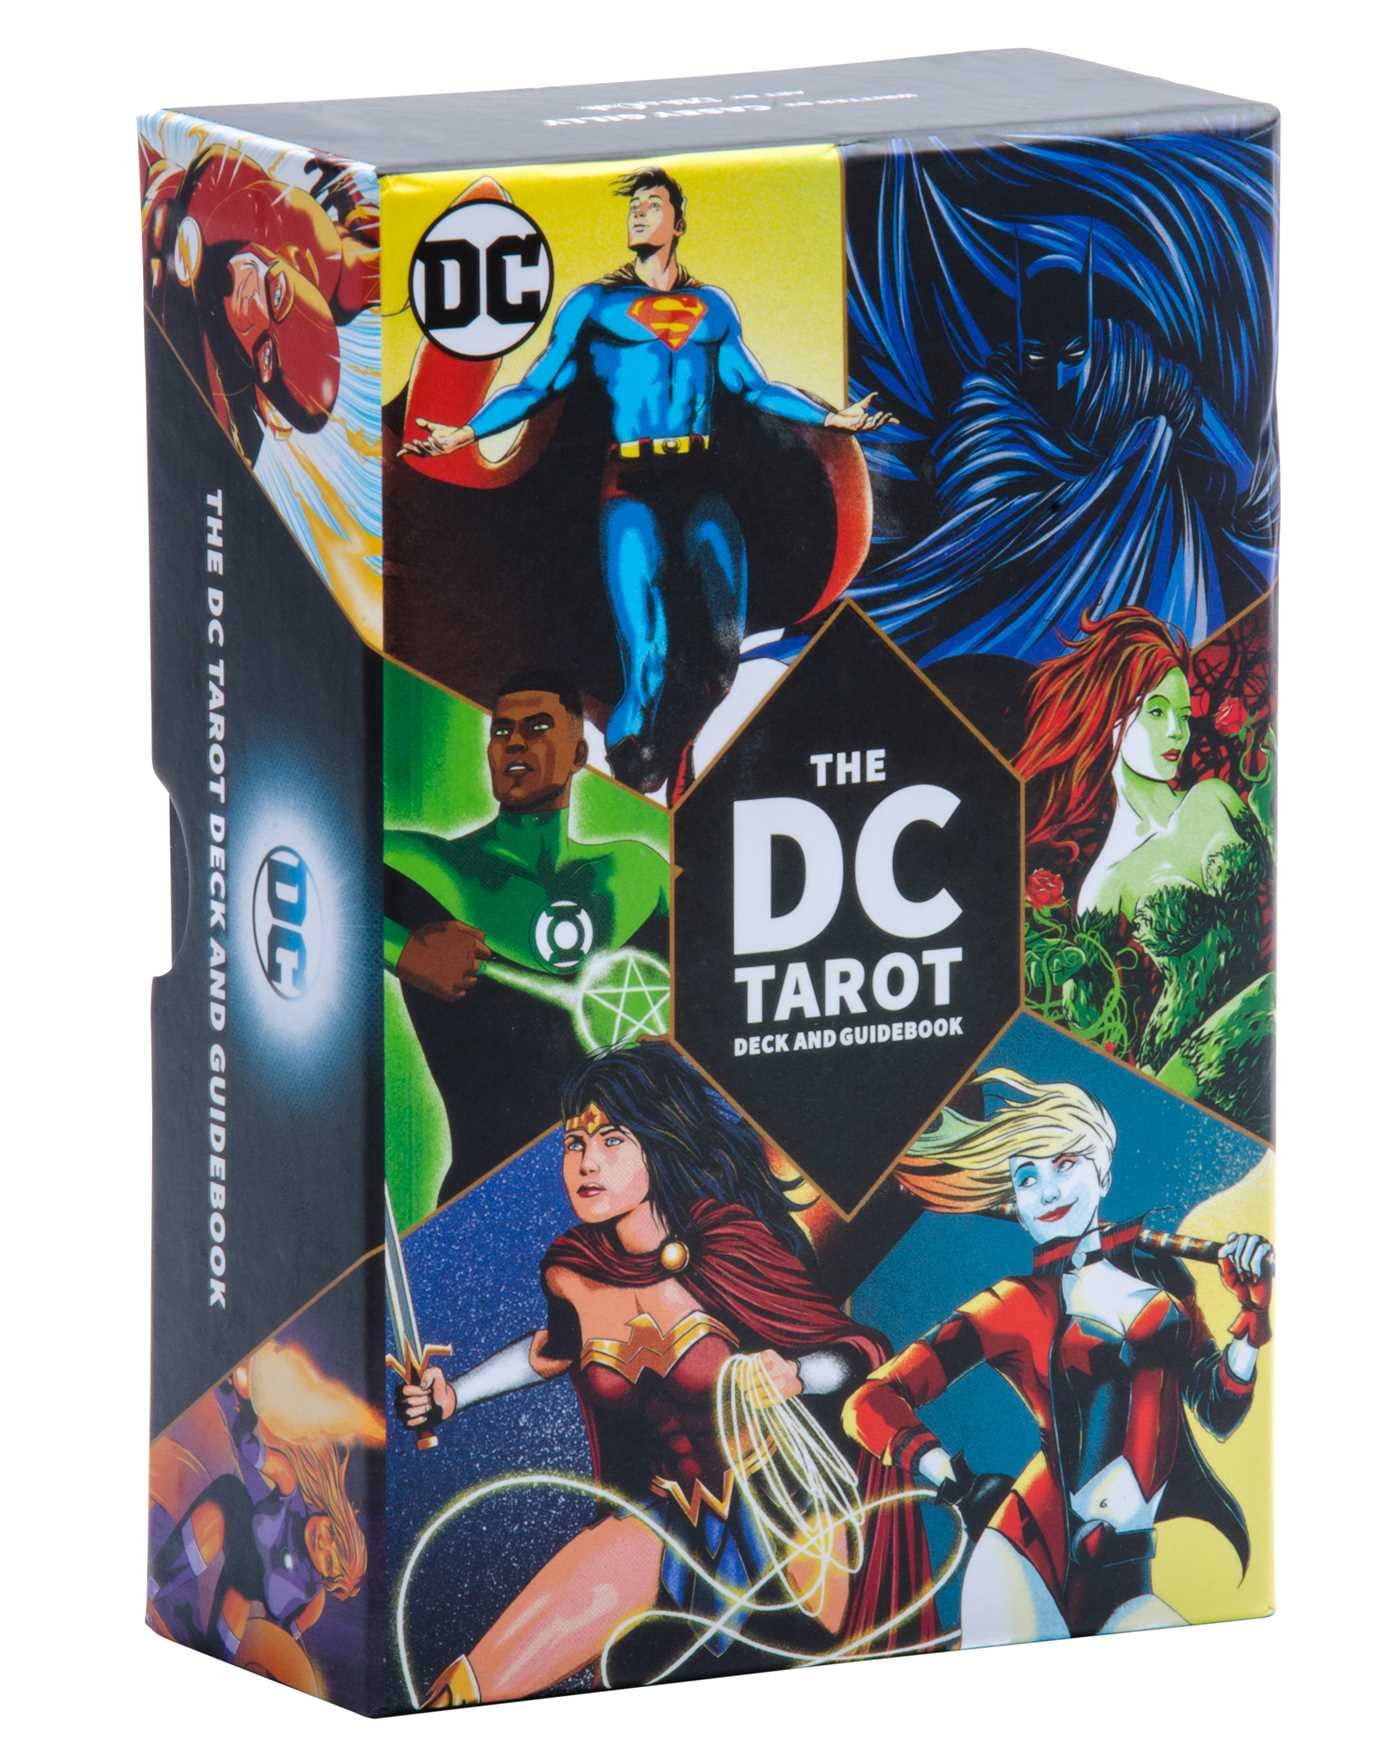 The DC Tarot Deck